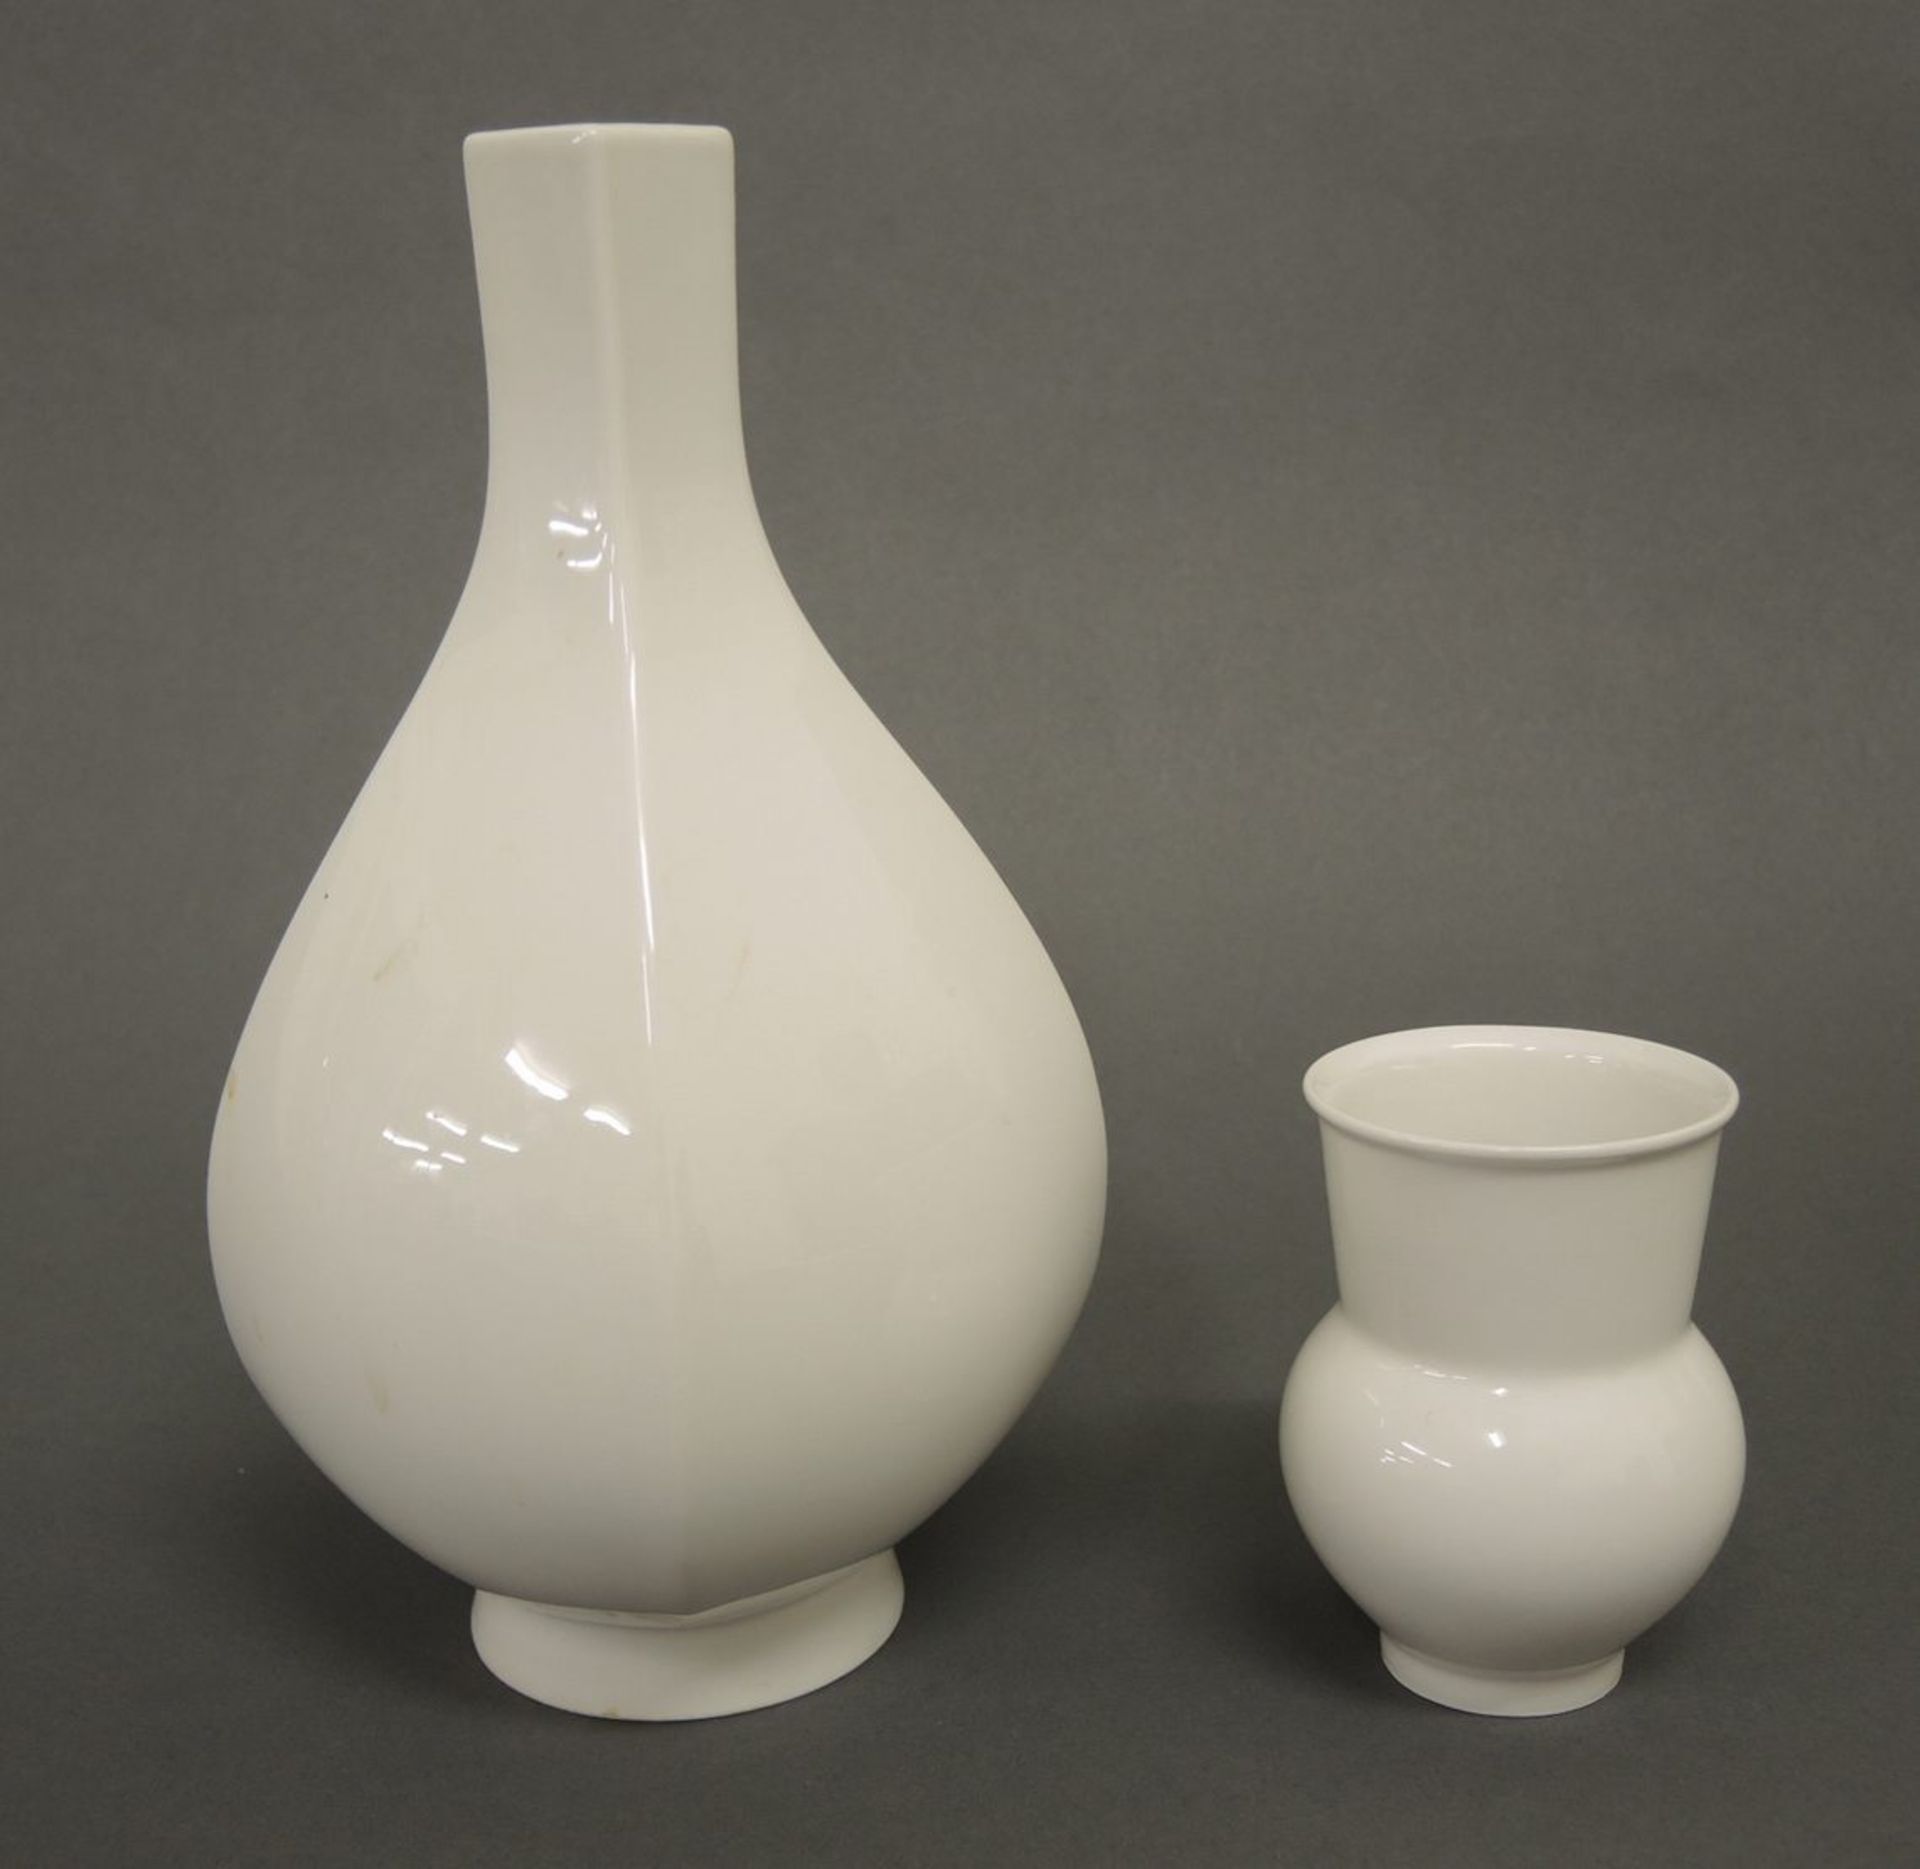 Zwei VasenWeißporzellan. Auf rundem Standfuß. Große Vase mit vierpassiger Balusterform, eingezogenen